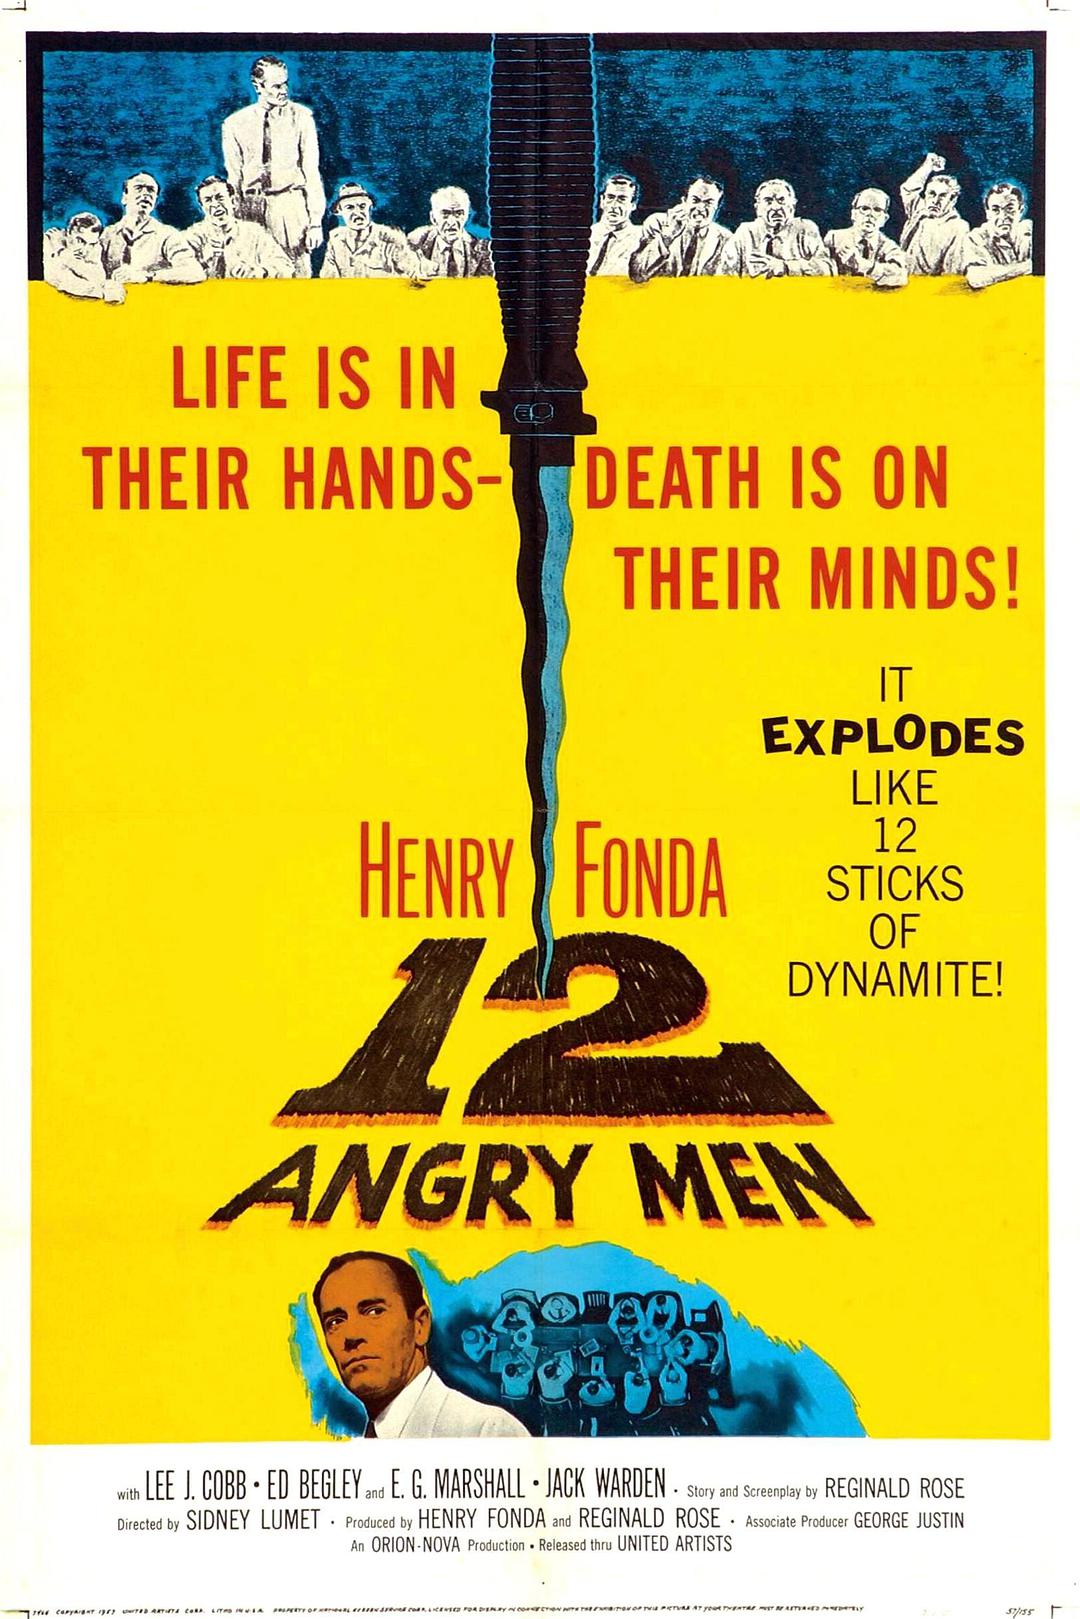 十二怒汉 12.Angry.Men.1957.1080p.BluRay.REMUX.AVC.LPCM.1.0-FGT 17.03GB